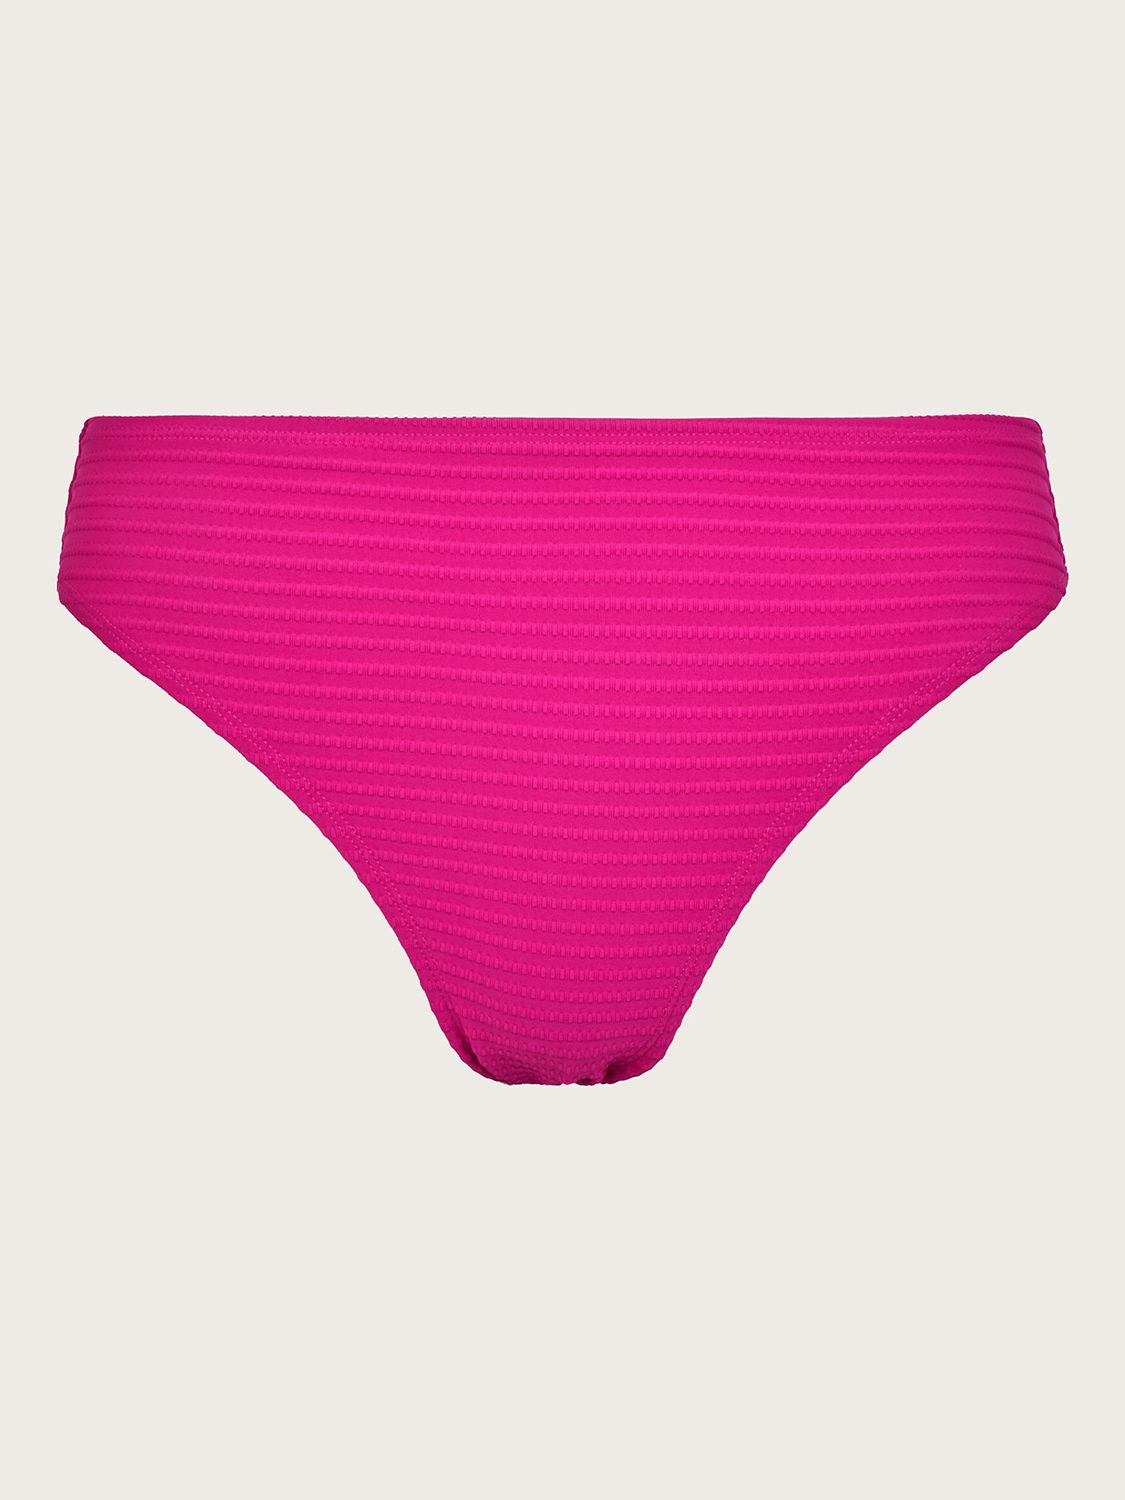 Monsoon Maria Bikini Bottoms, Pink at John Lewis & Partners